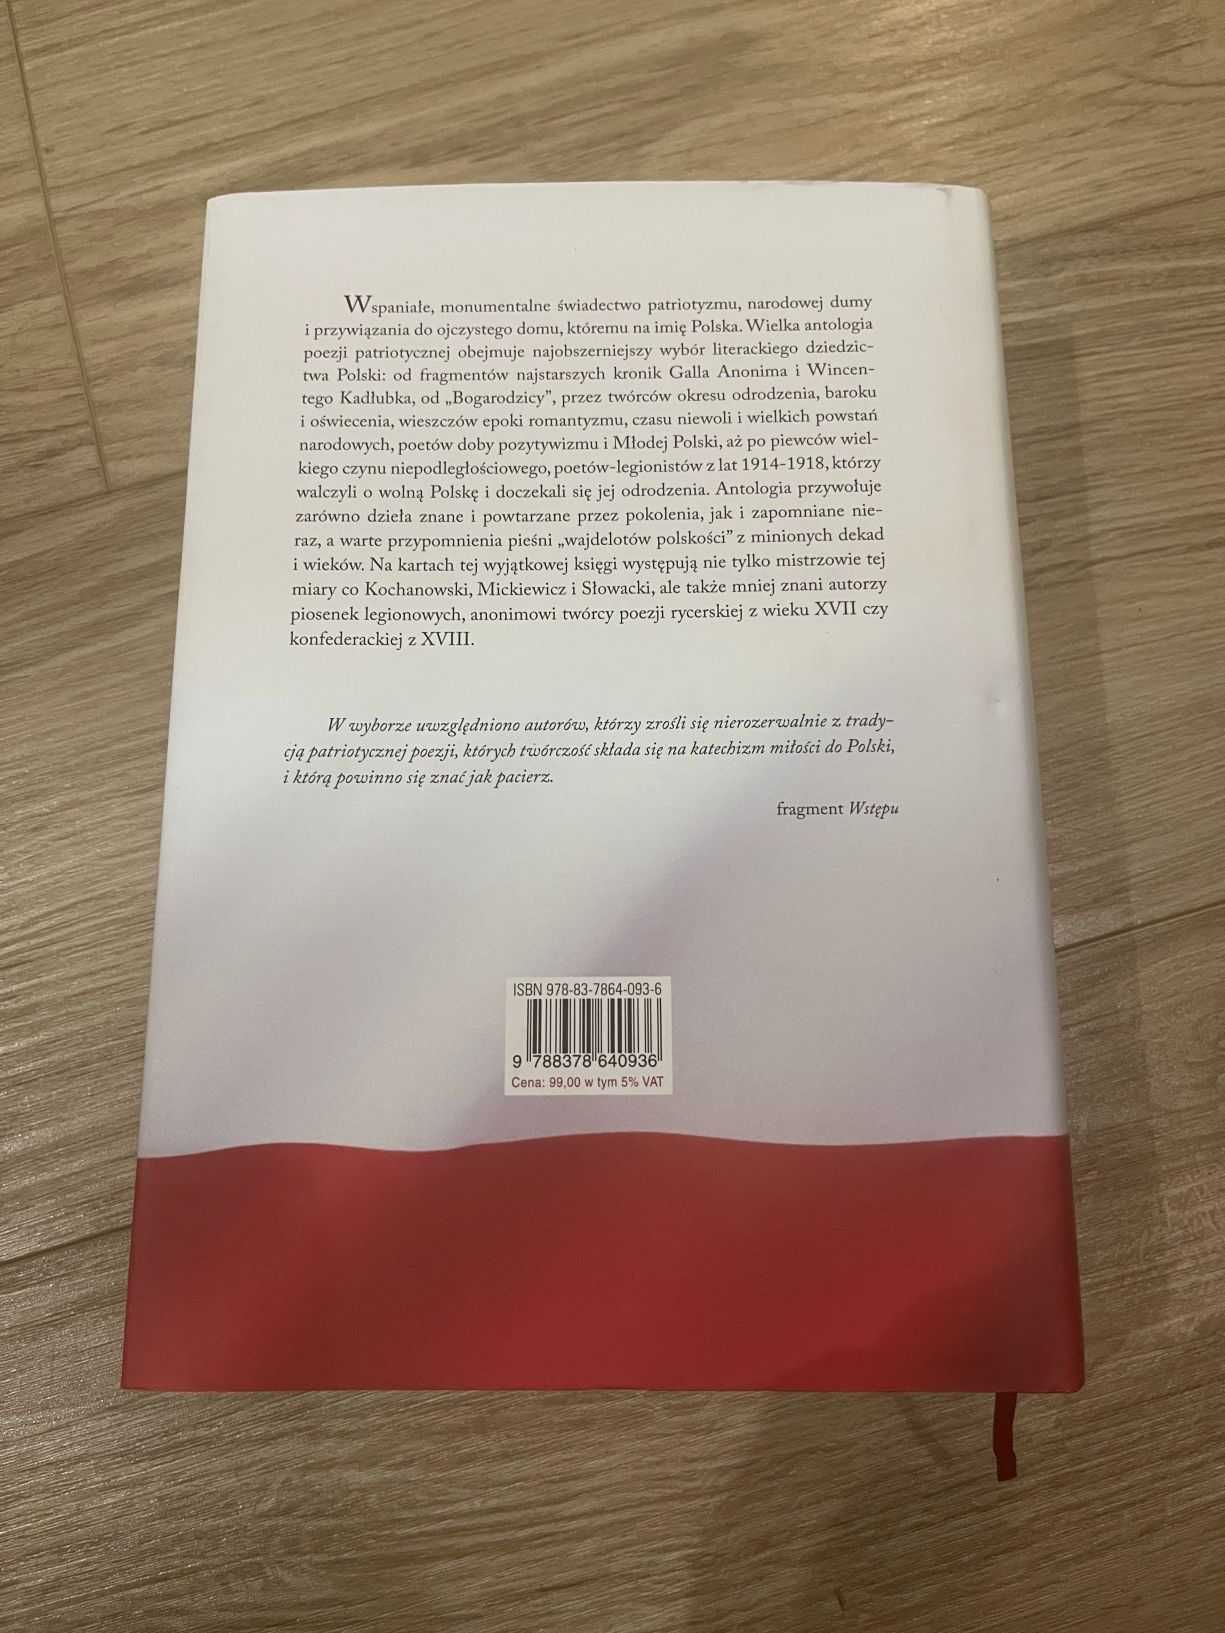 Jeszcze Polska... Klasyka polskiej poezji patriotycznej